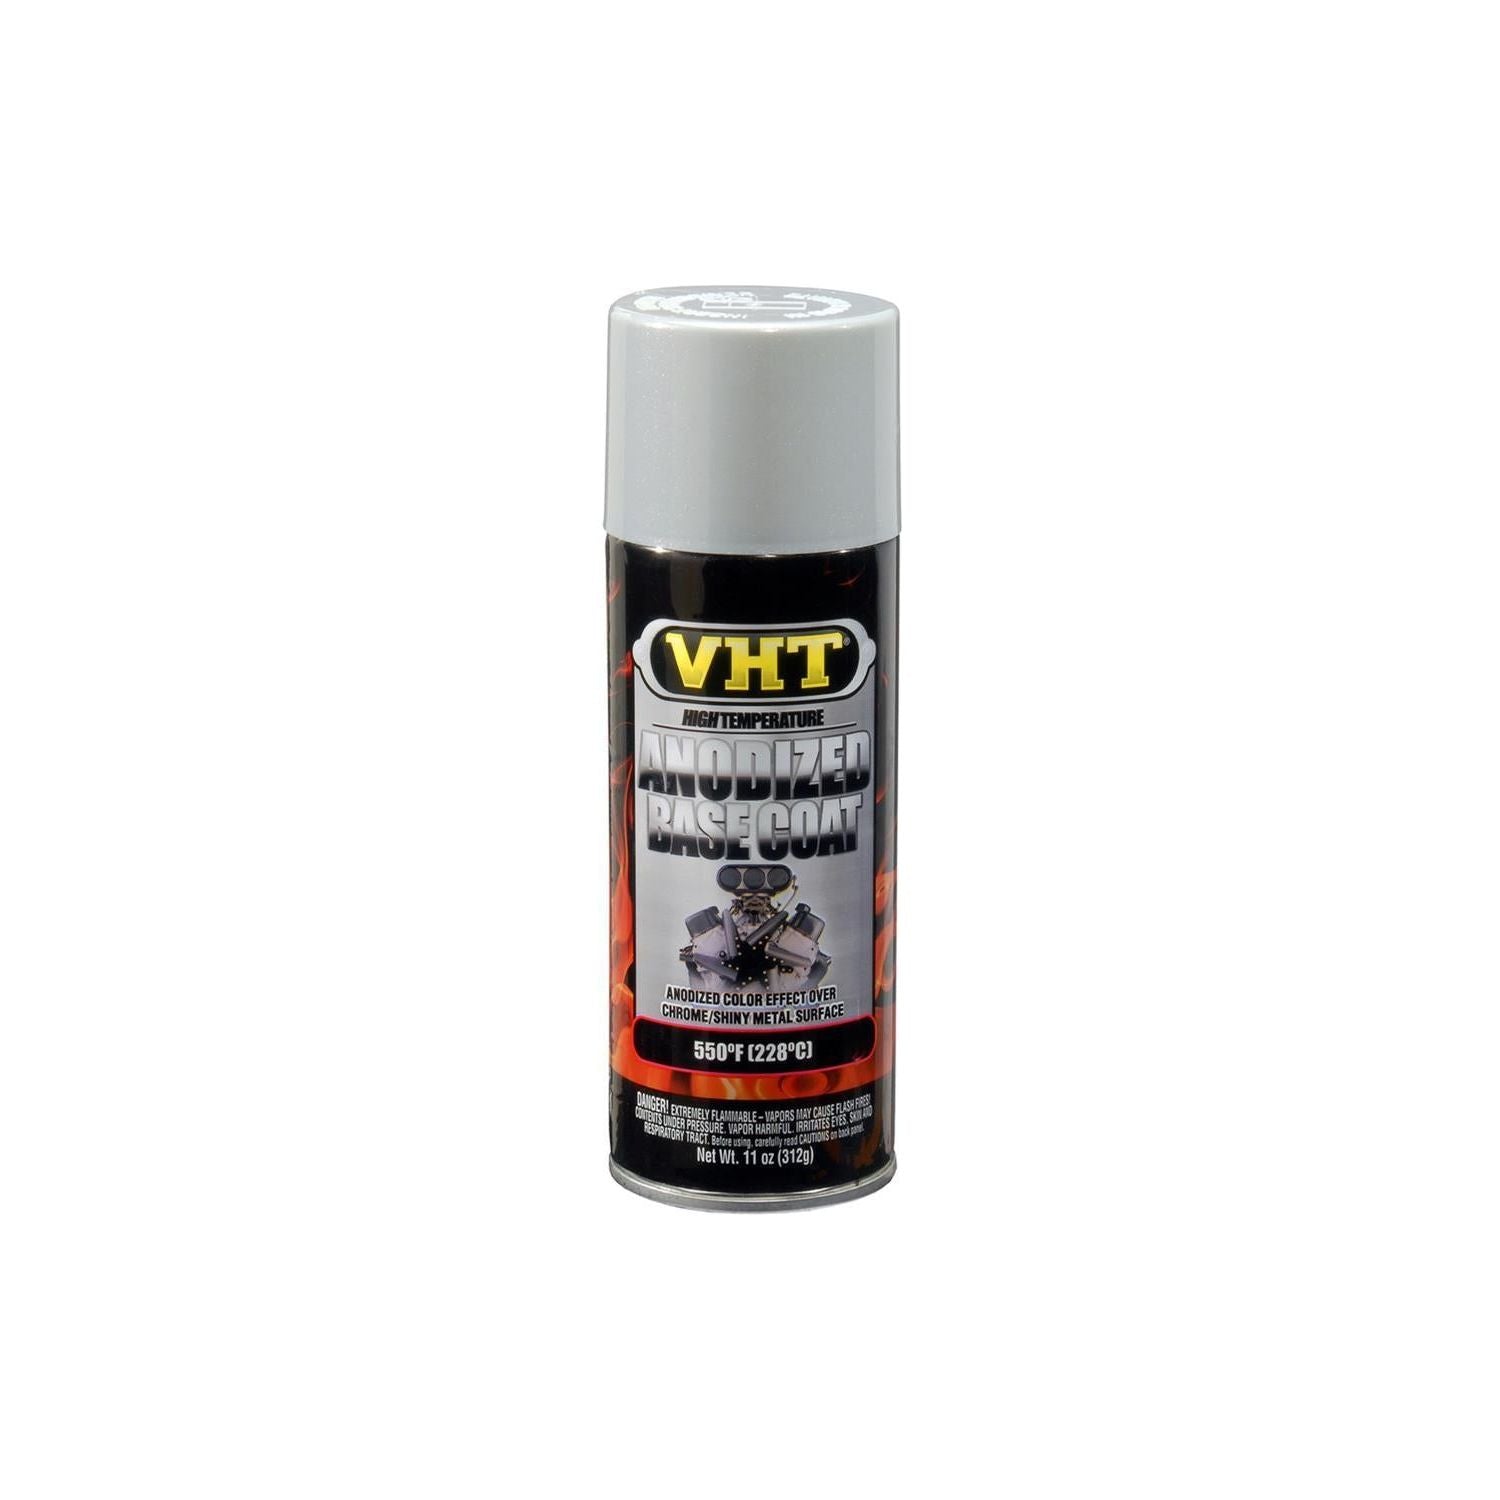 VHT SP453 - Silver Base Coat Paint